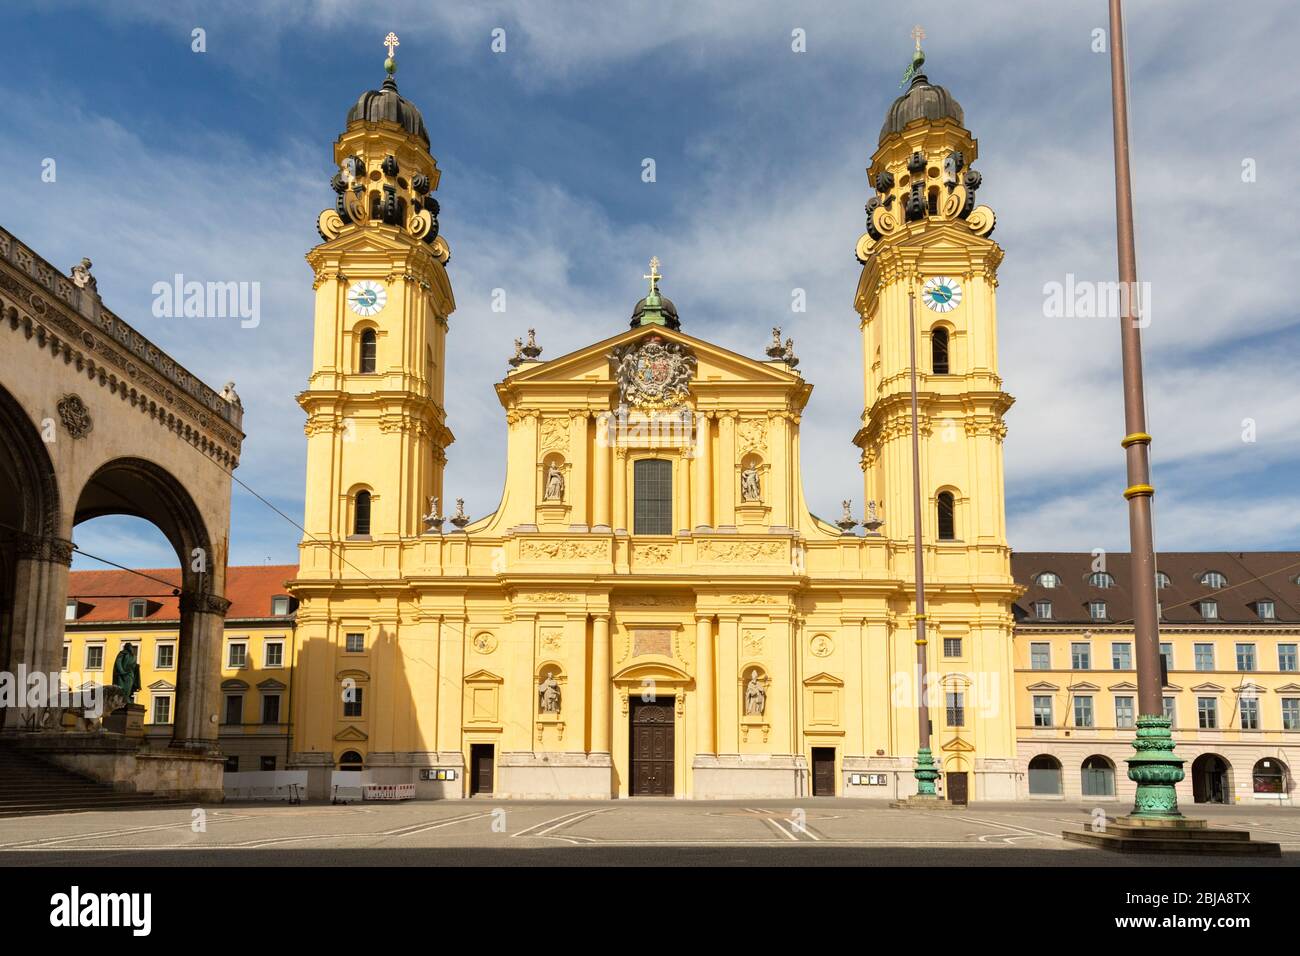 Vorderansicht der Theatinerkirche (Theatine Church of St. Cajetan). Katholische Kirche, eingeweiht 1675. Barocke Architektur. Berühmte Kirche in München. Stockfoto